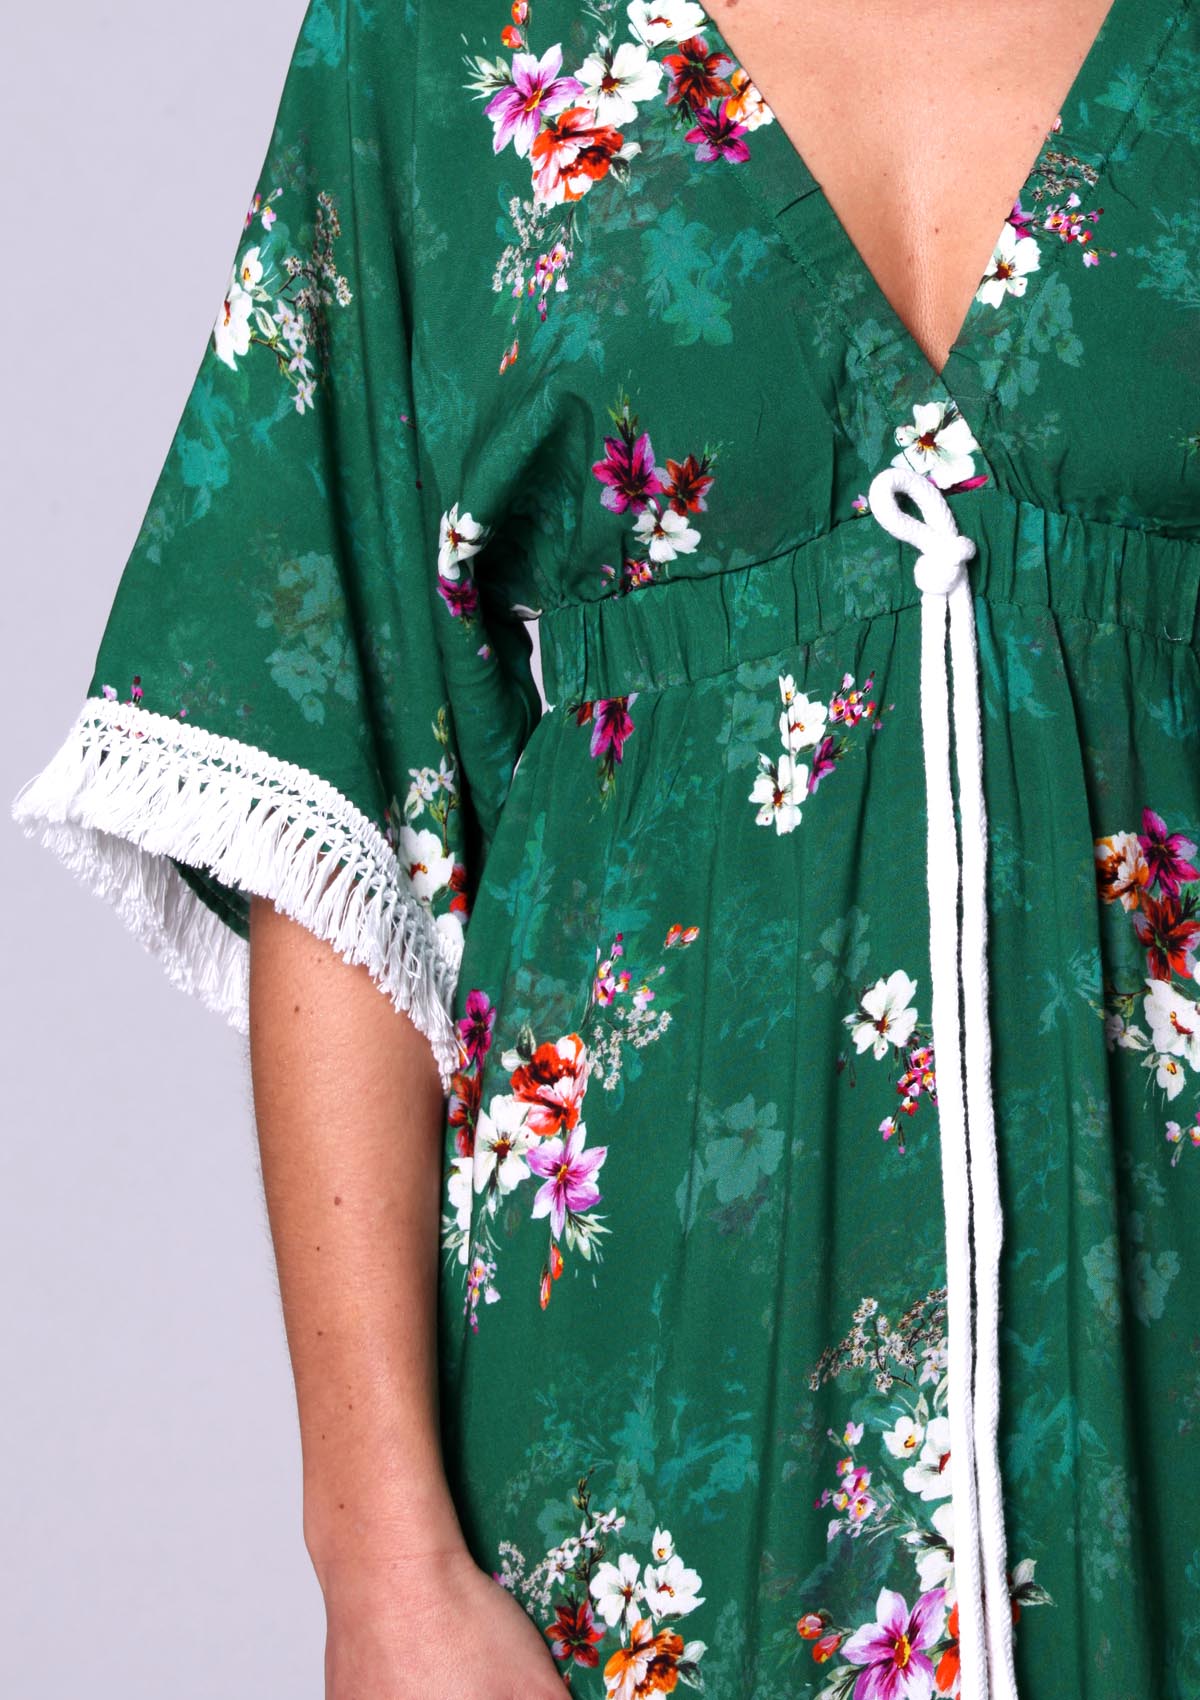 Tropical flower maxi dress